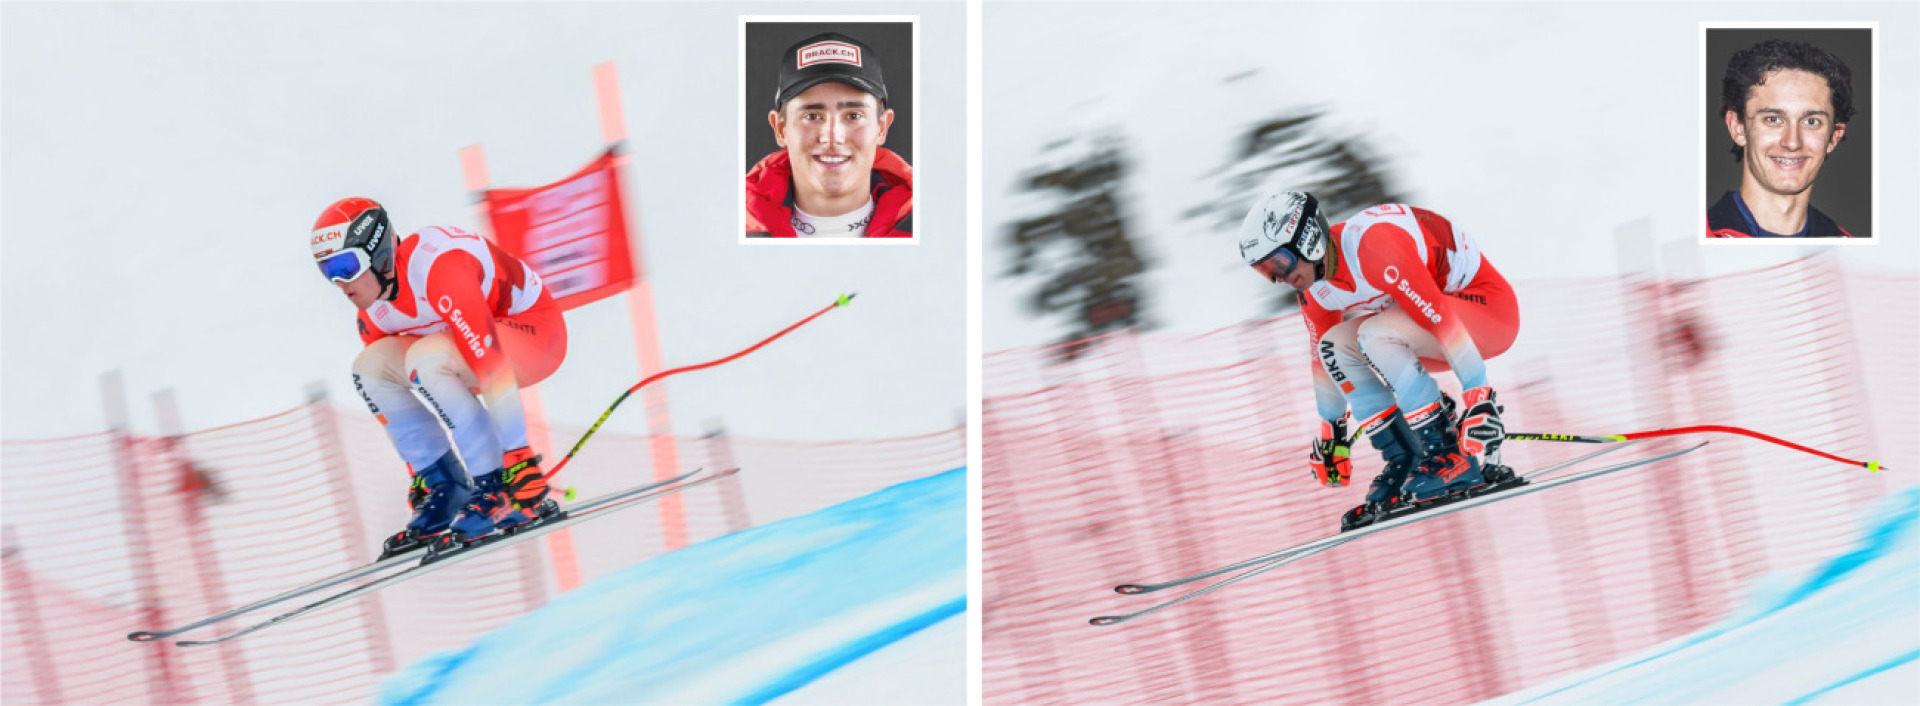 Sandro Zurbrügg (l.) fährt im B-Kader von Swiss-Ski, Lorin Ritschard im Nationalen Leistungszentrum Mitte. BILDER: RK PHOTOGRAPHY, SWISS-SKI